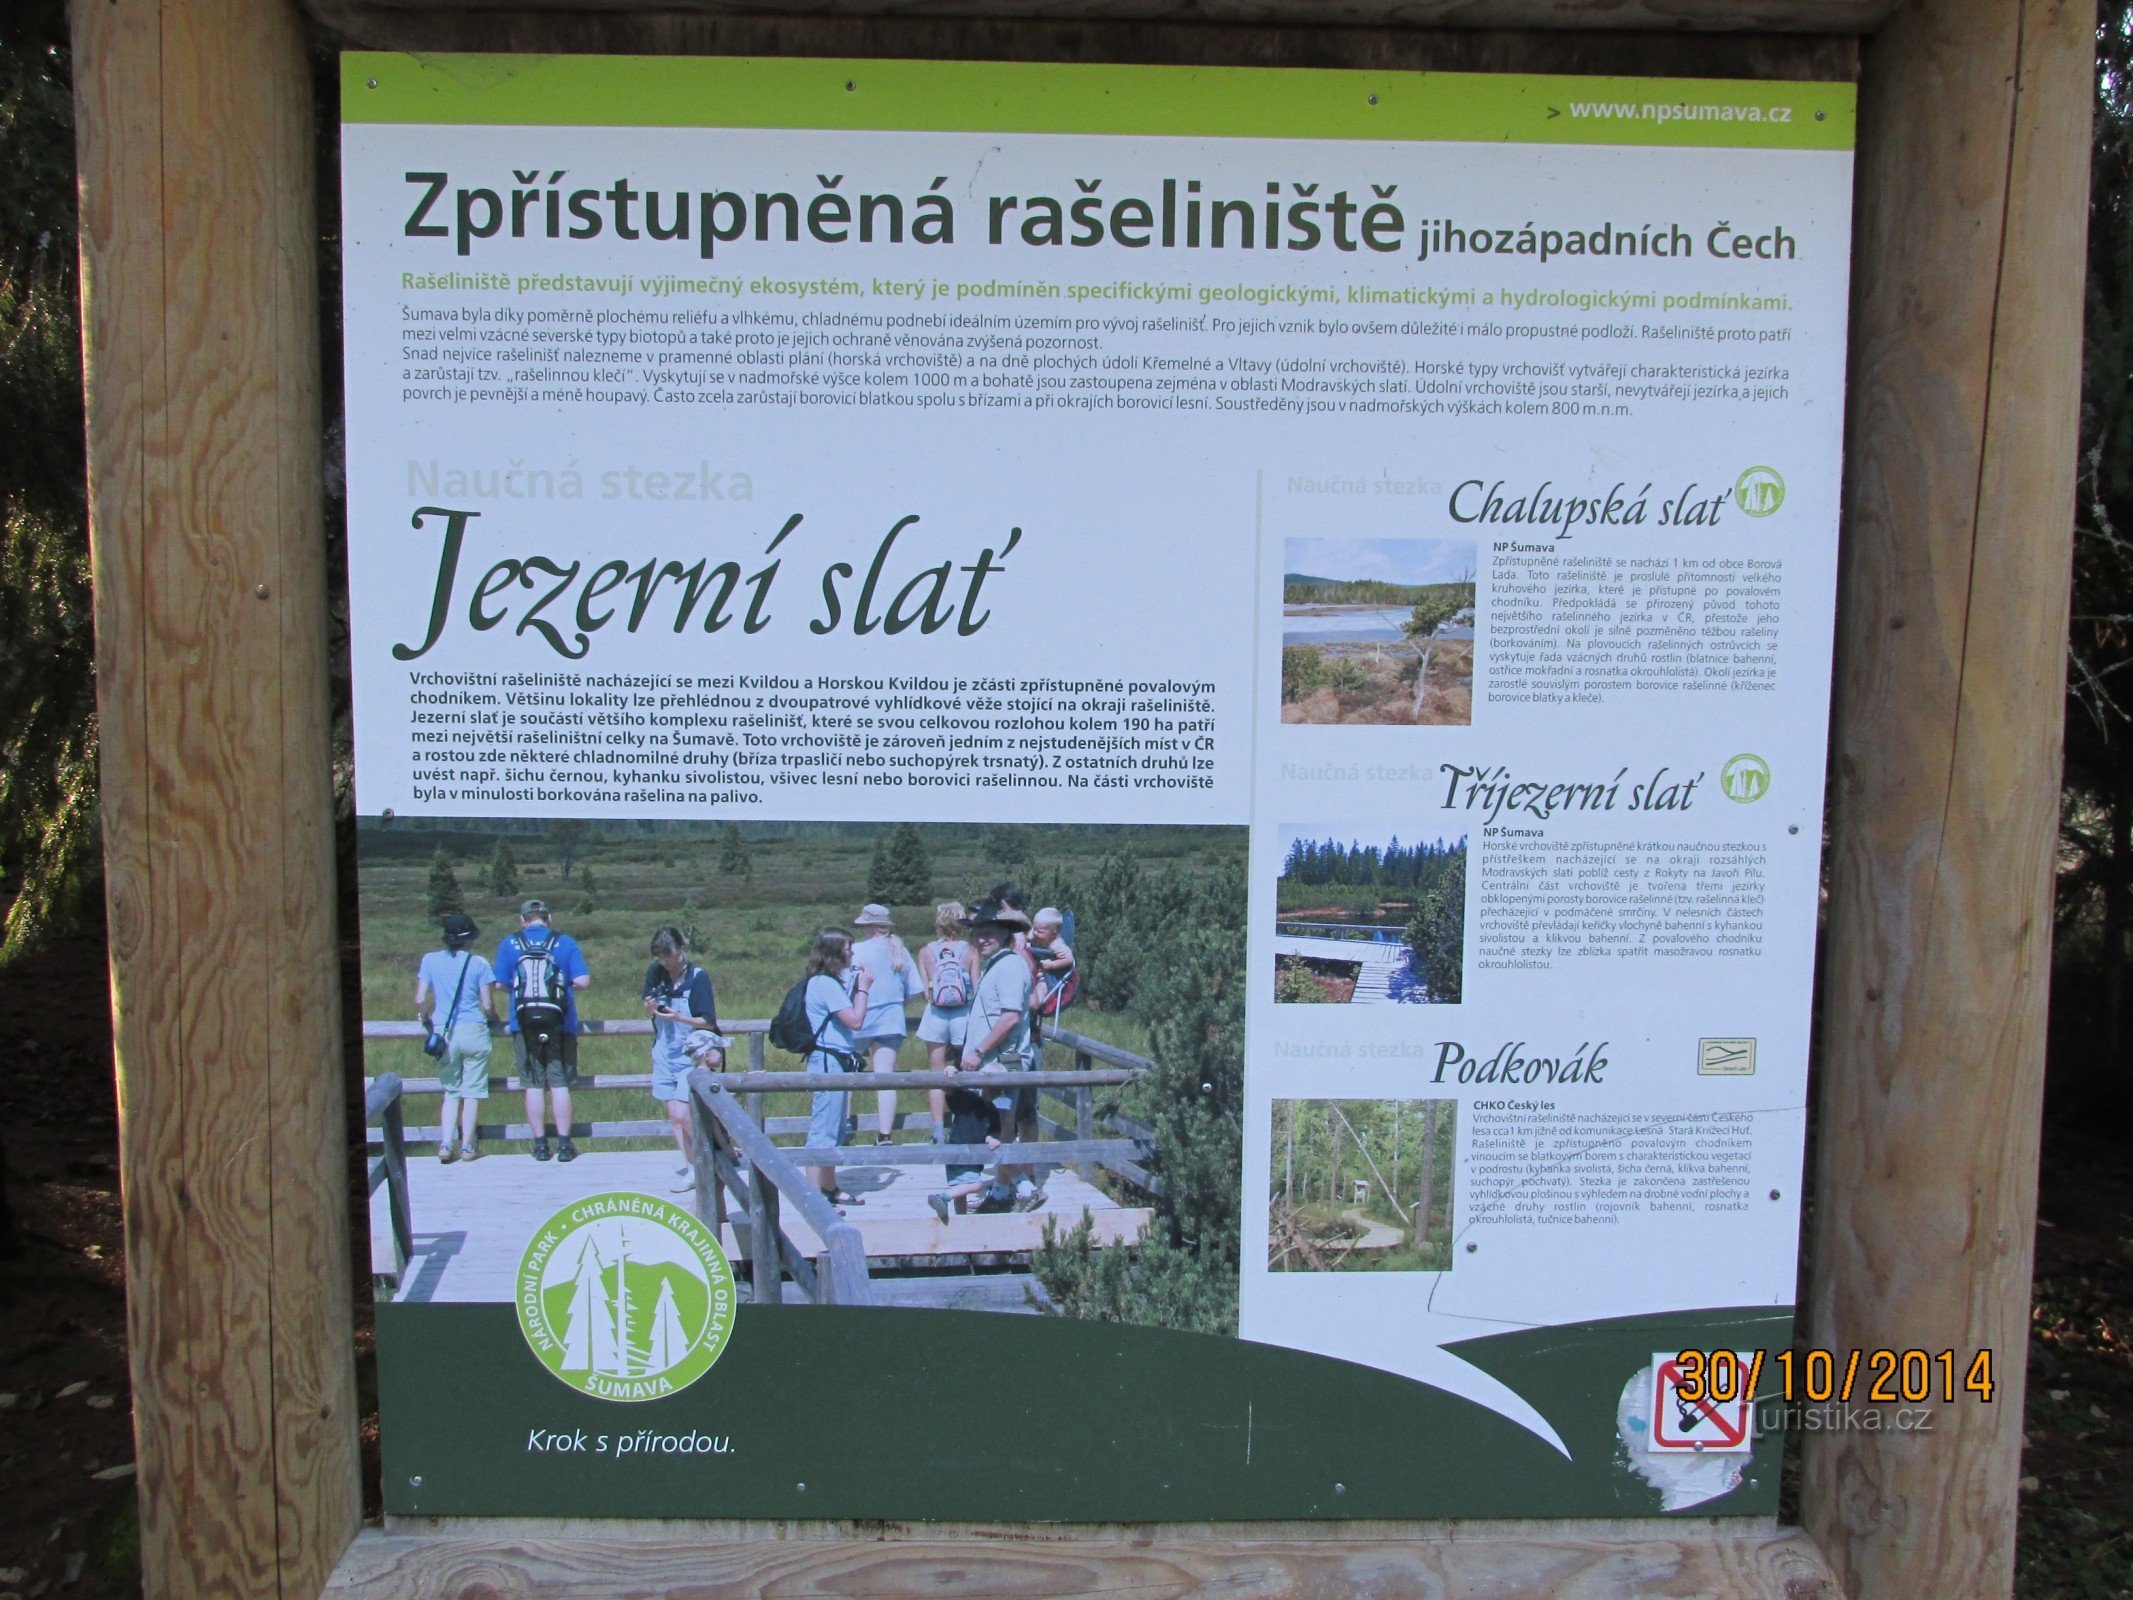 Tour del monumento naturale delle torbiere di Šumava - torbiere